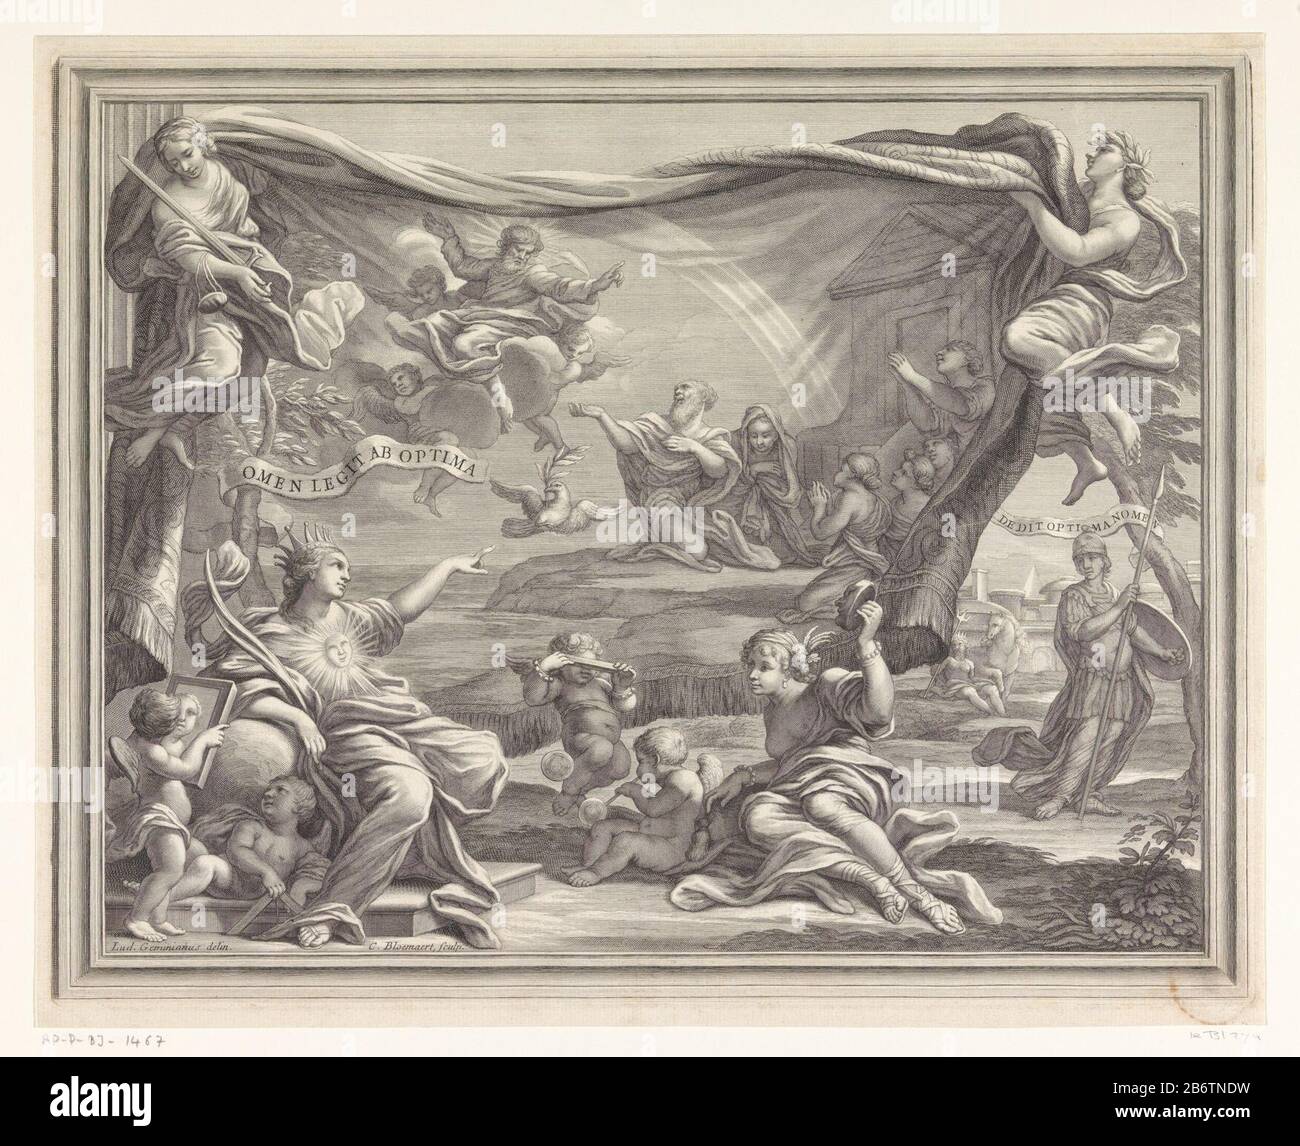 Het verbond tussen God en Noach Allegorische prent met antieke goden en putti die naar een tapijt met een afbeelding van het verbond tussen God en Noach kijken. De duif met de olijftak in haar snavel is net gearriveerd en Noach wil God voor de redding danken. Hij zit met zijn familie voor de ark. Op de achtergrond is een regenboog te zien. Manufacturer : prentmaker: Cornelis Bloemaert (II) (vermeld op object)naar tekening van: Ludovico Gimignani (vermeld op object)Plaats manufacture: Rome Dating: 1658 - 1692 Physical kenmerken: gravure Material: papier Techniek: graveren (drukprocedé) Dimensio Stock Photo